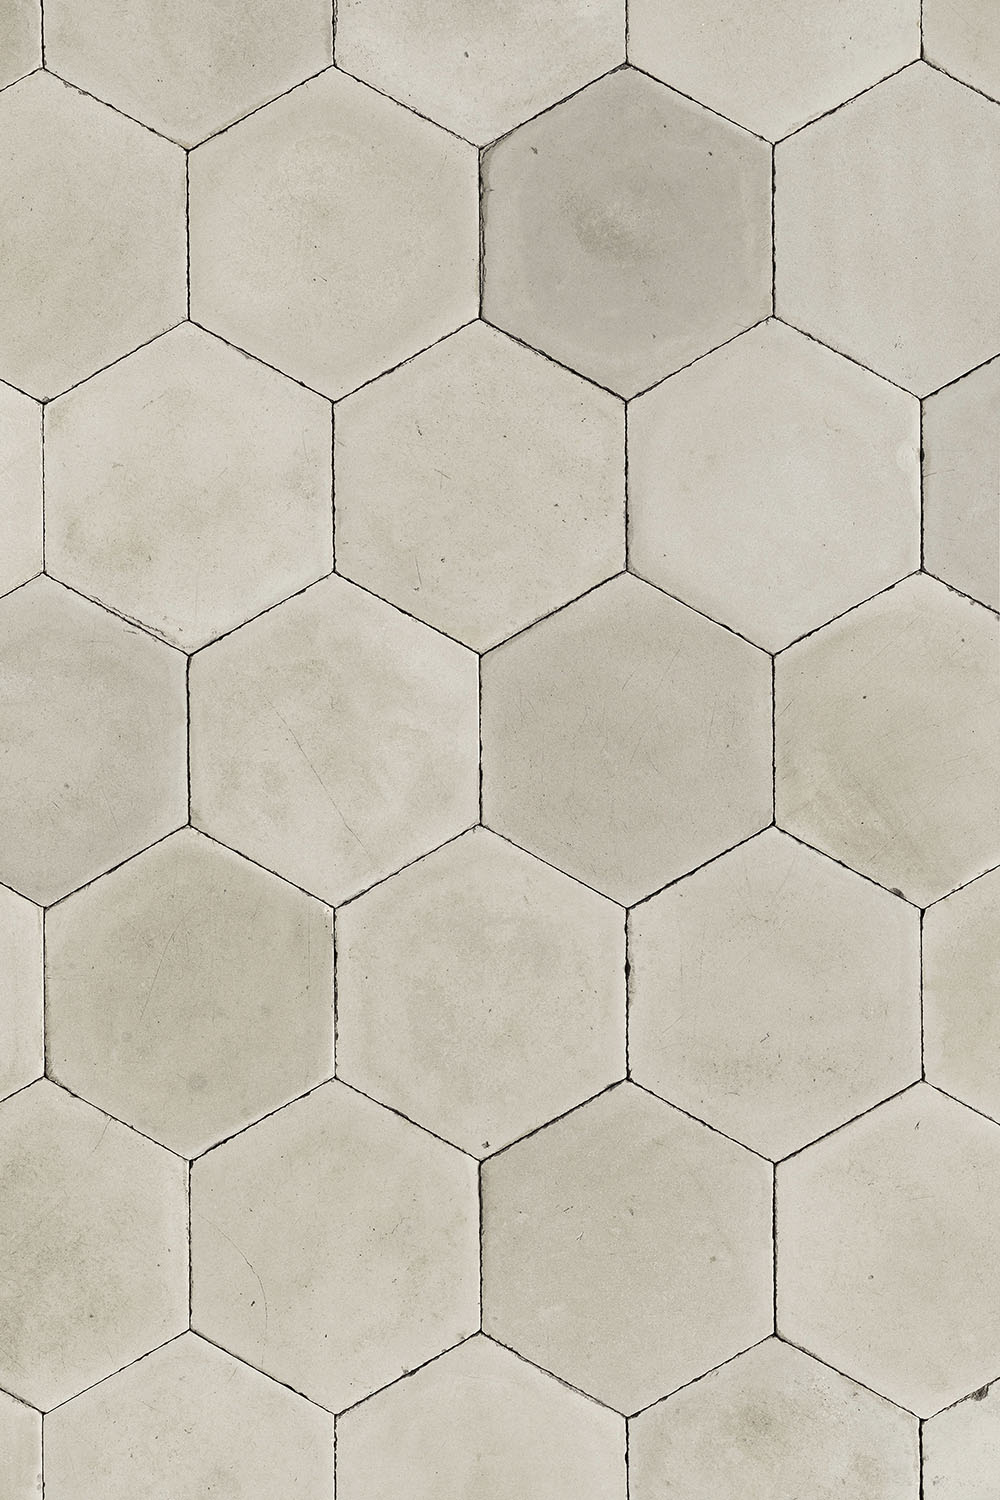 Hexagon vloer tegels fotoachtergrond met prachtige antieke look